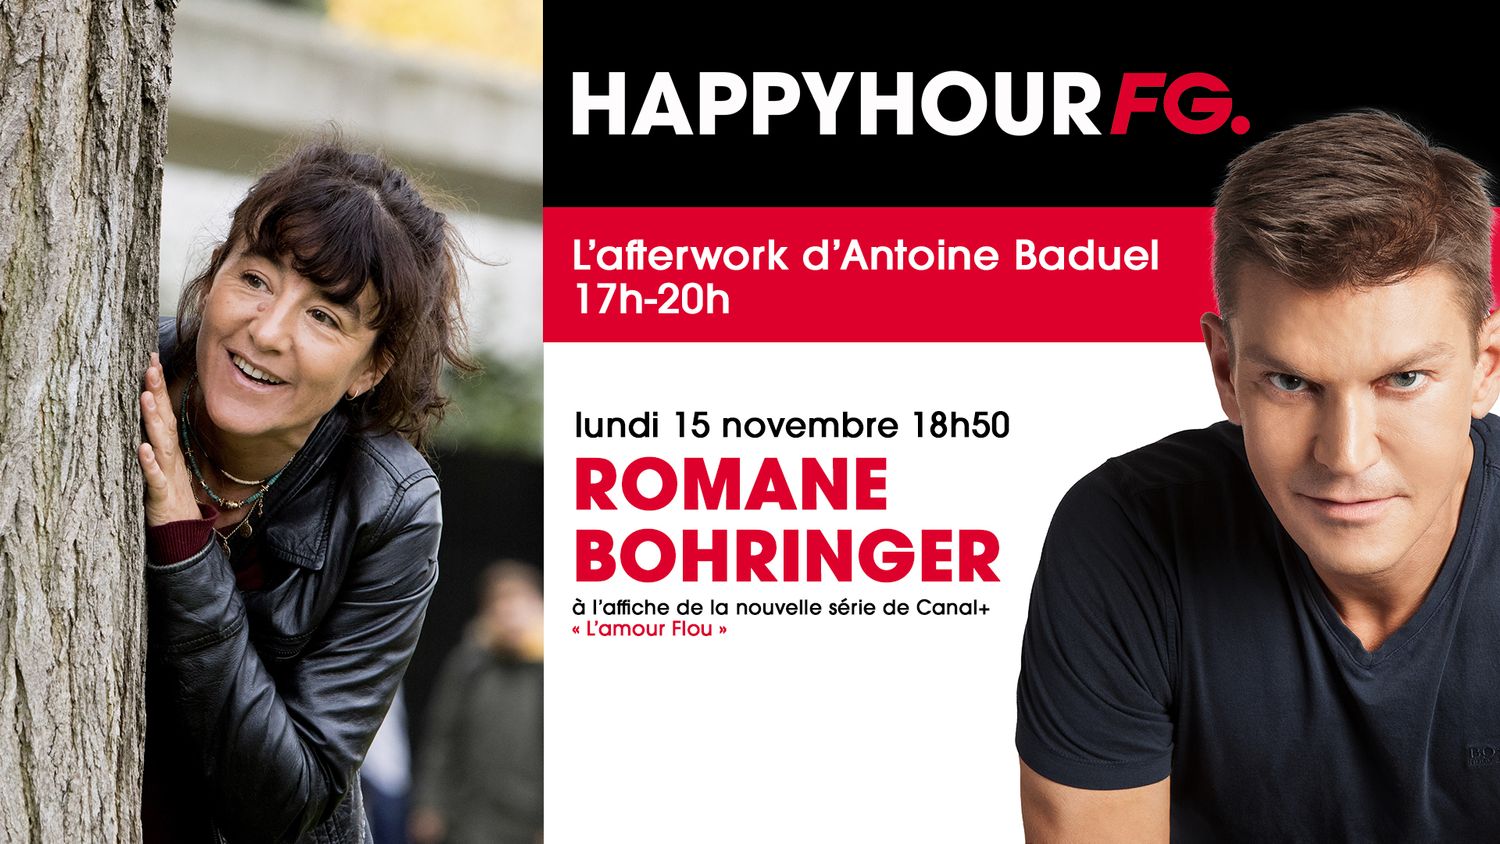 Romane Bohringer invitée de l'Happy Hour FG